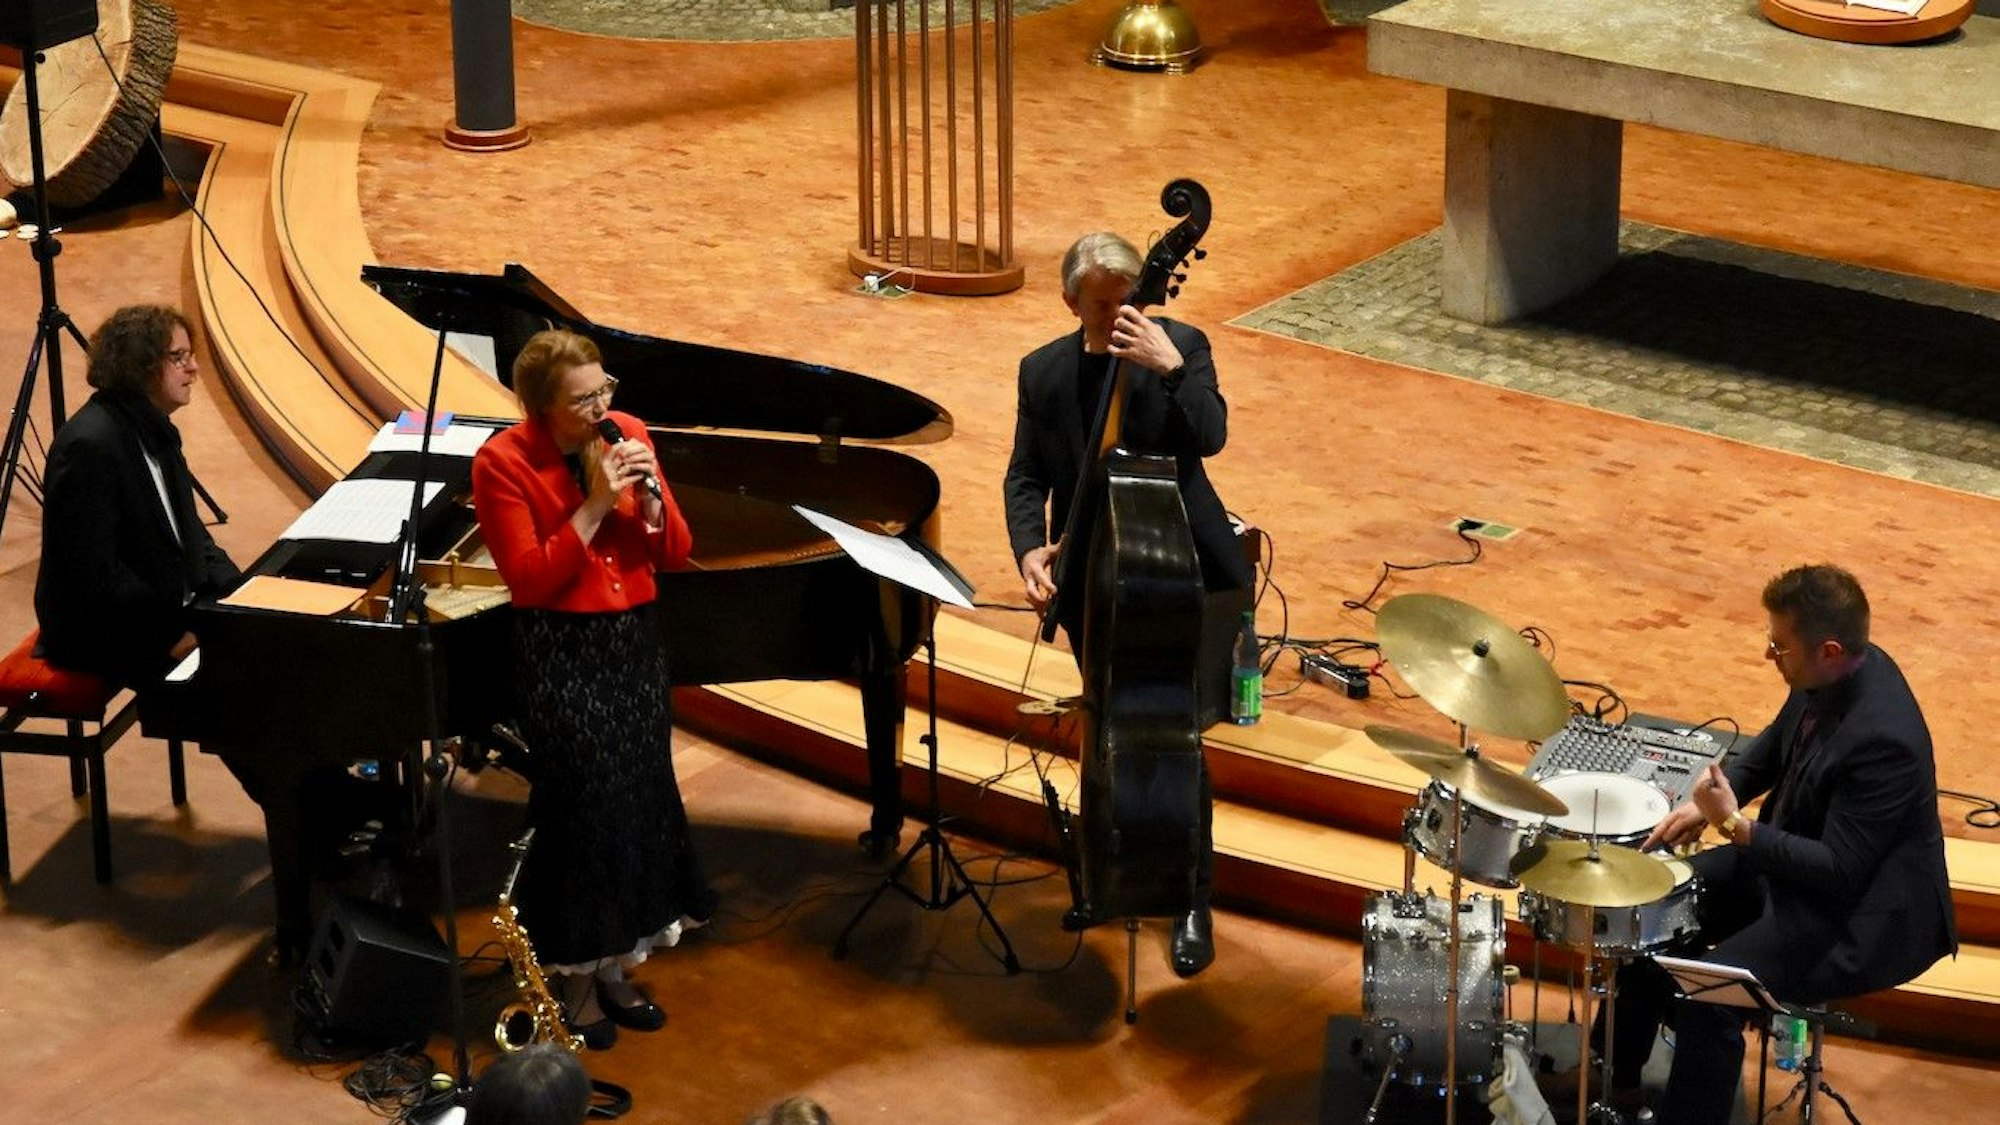 Männer und Frauen musizieren in einer Kirche. Sie spielen Bass, Schlagzeug und Klavier; eine Frau in einer roten Jacke singt.